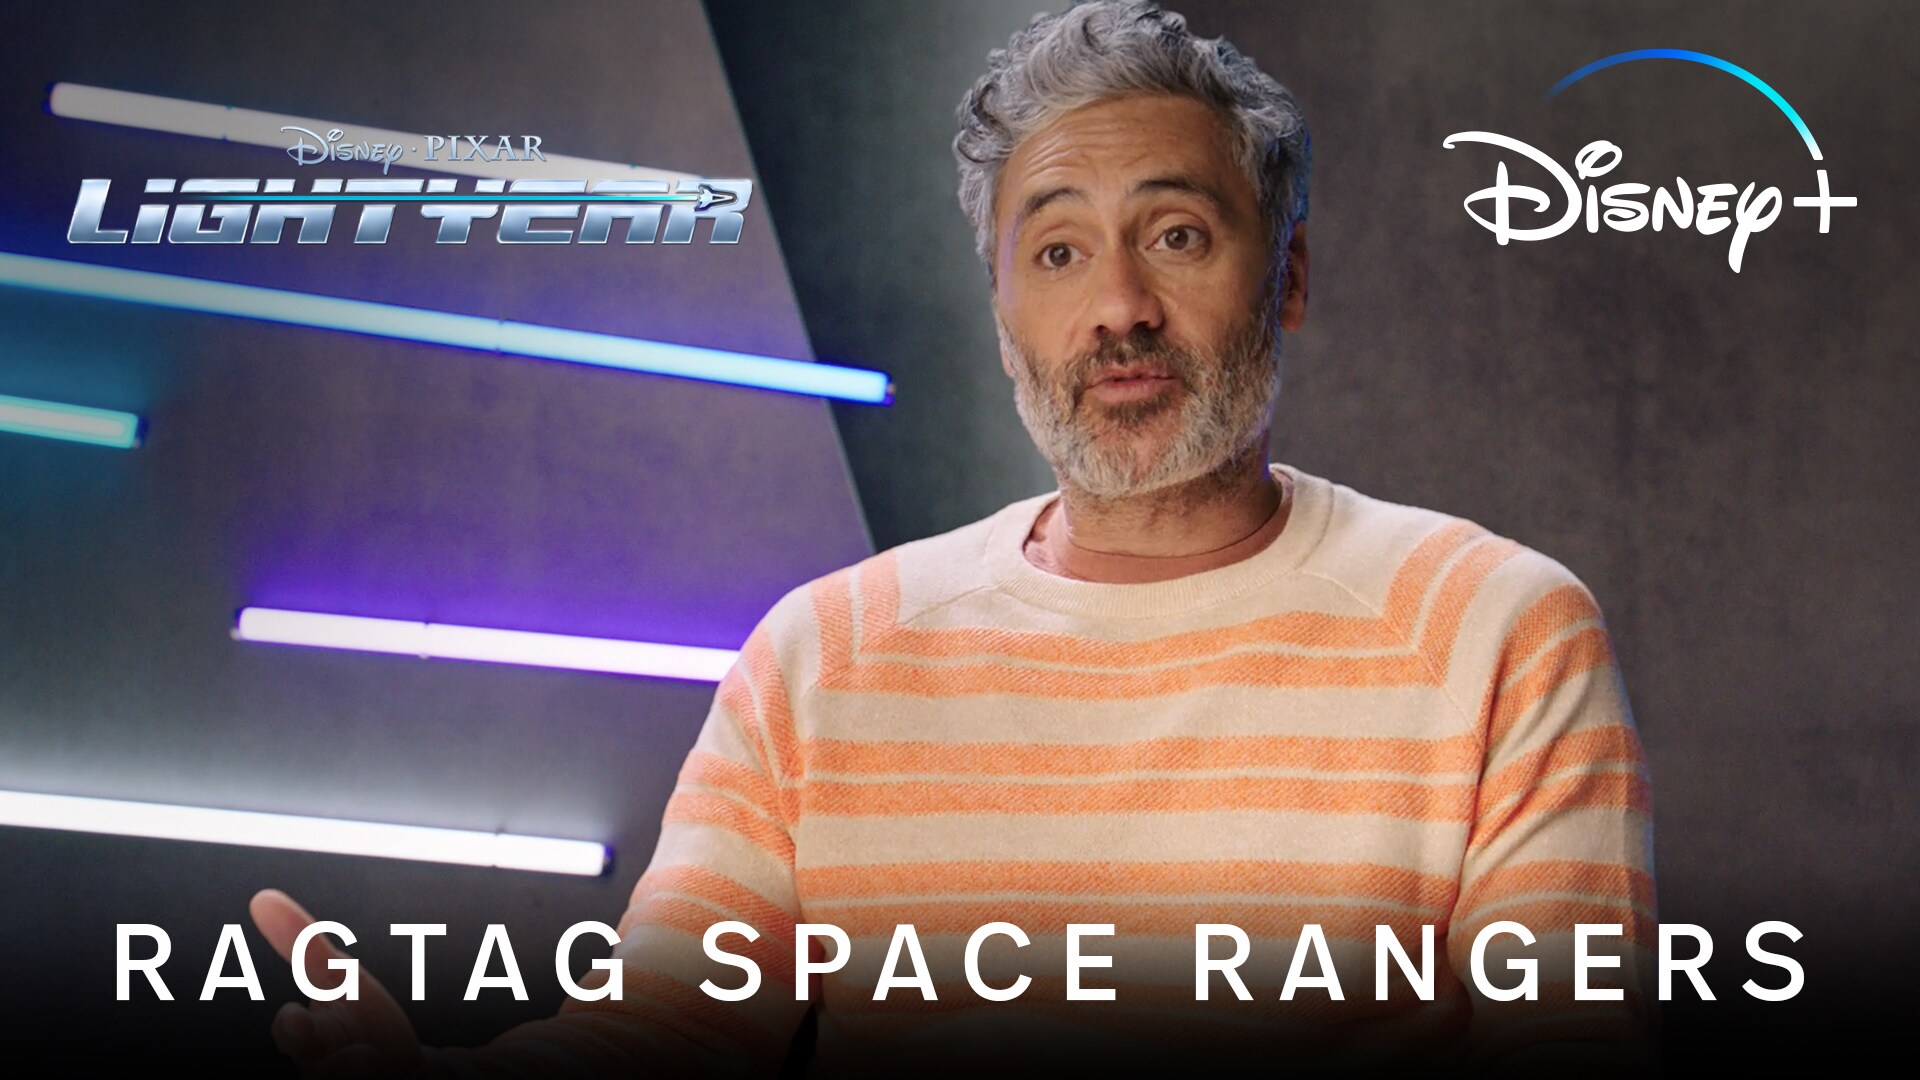 Ragtag Space Rangers | Lightyear | Disney+